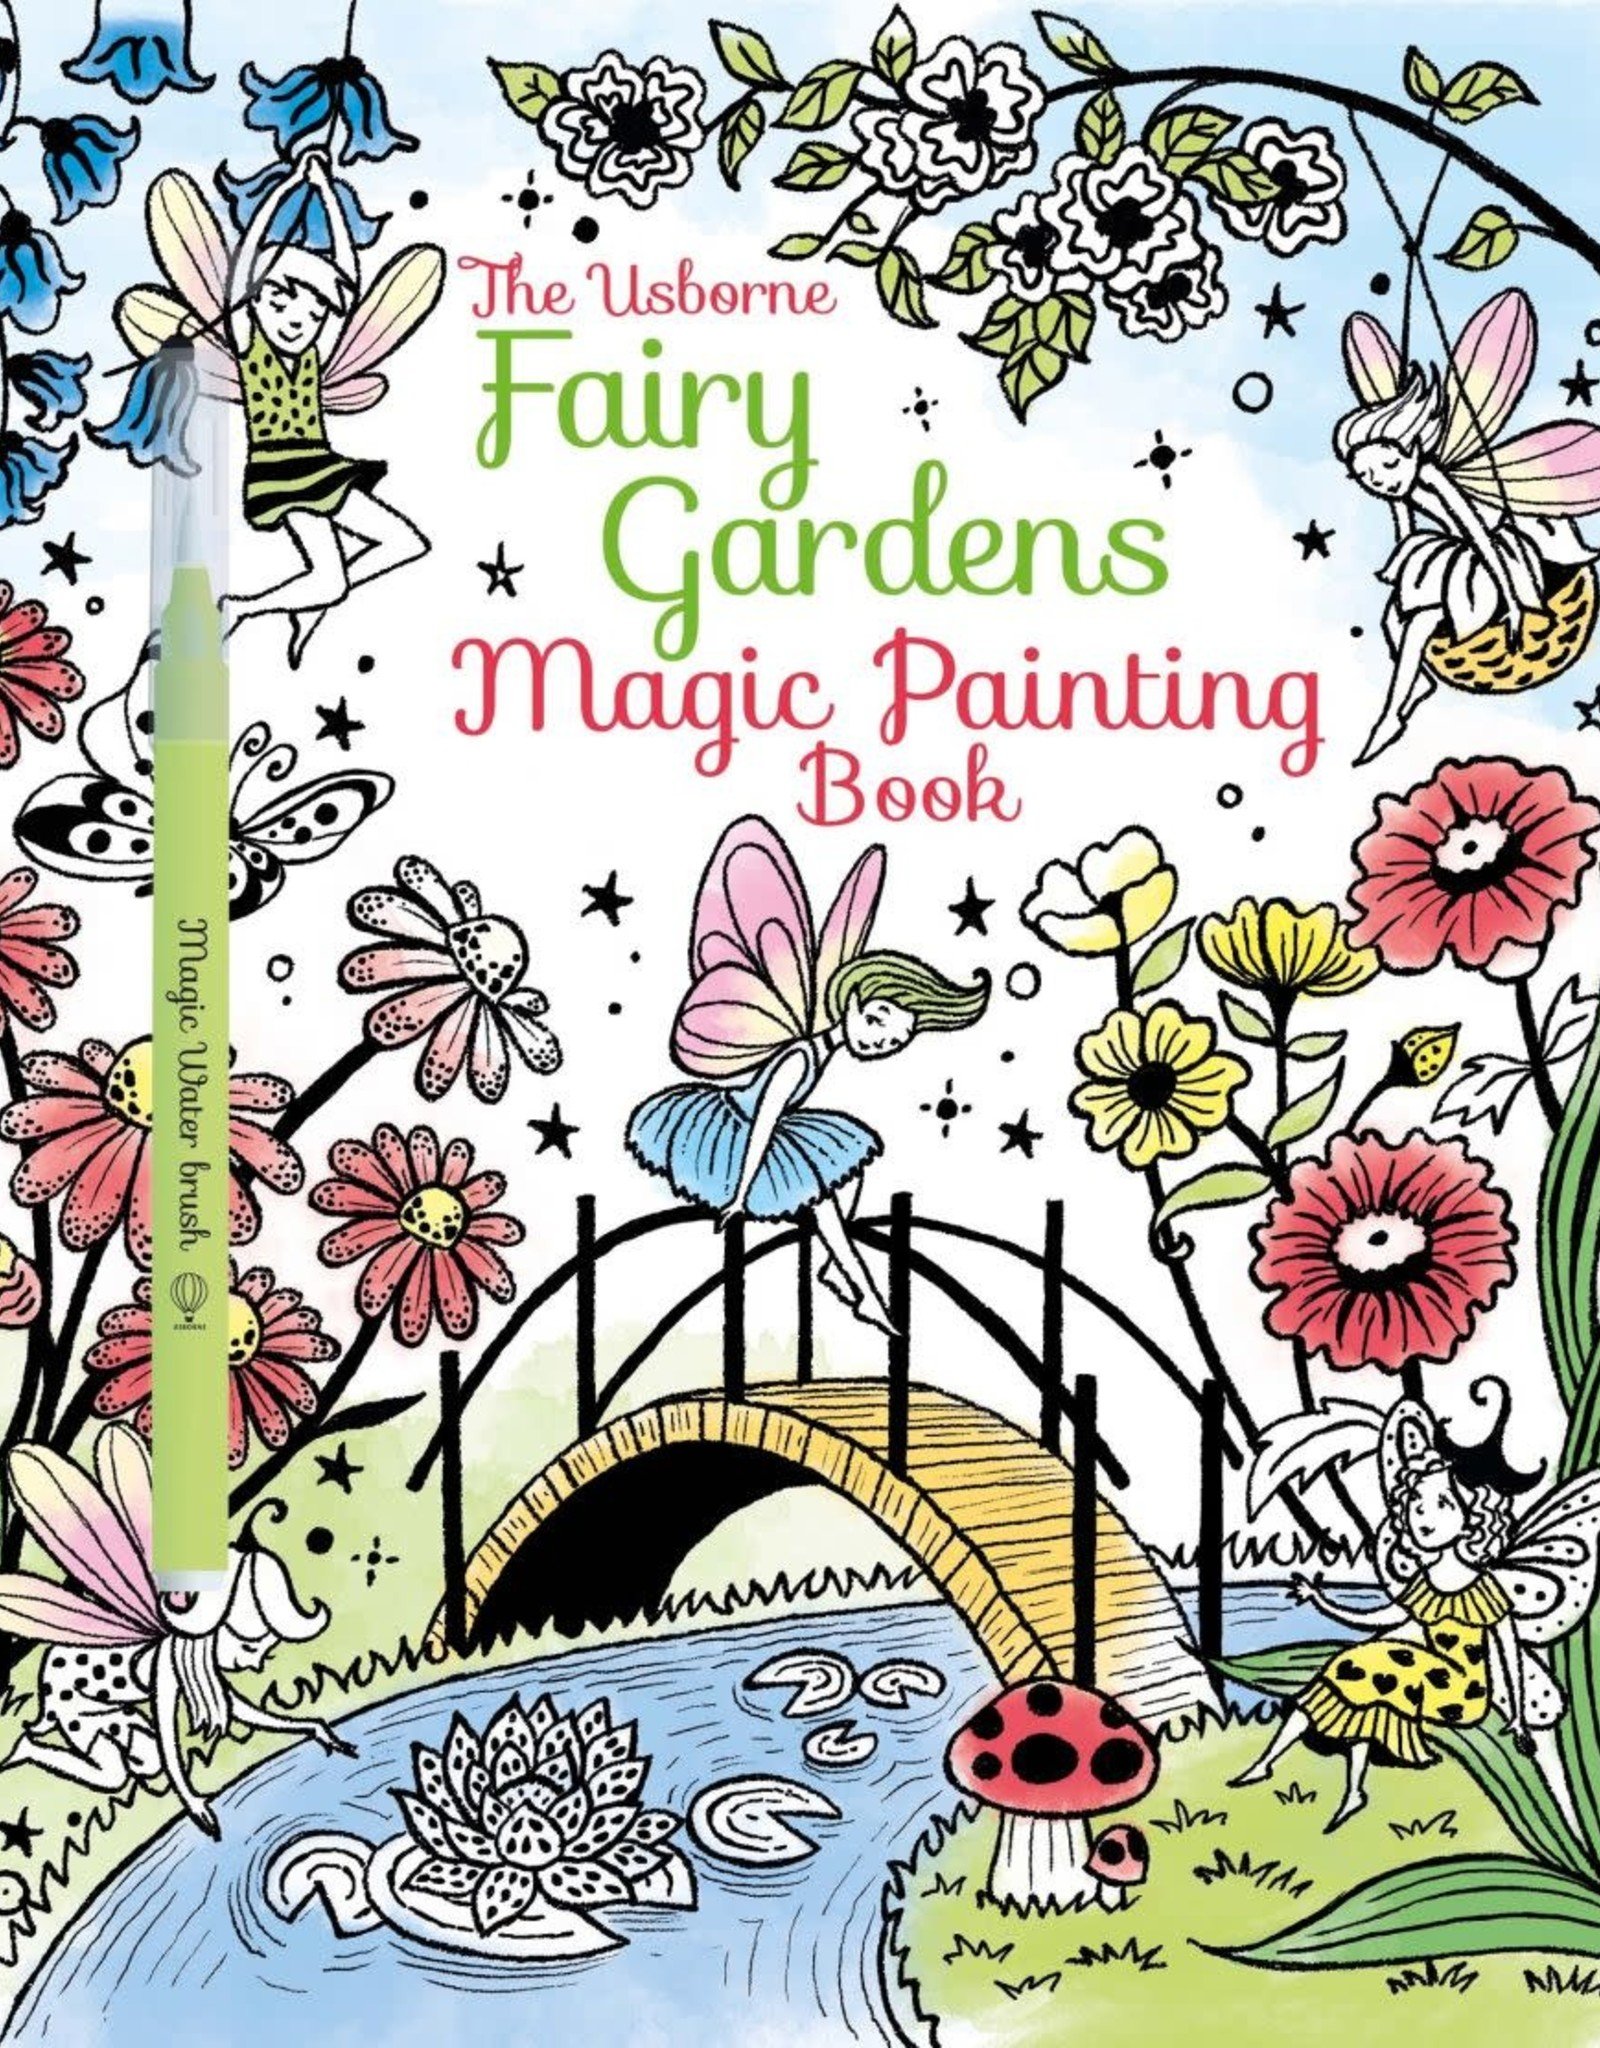 Usborne Magic Painting Book, Fairy Gardens